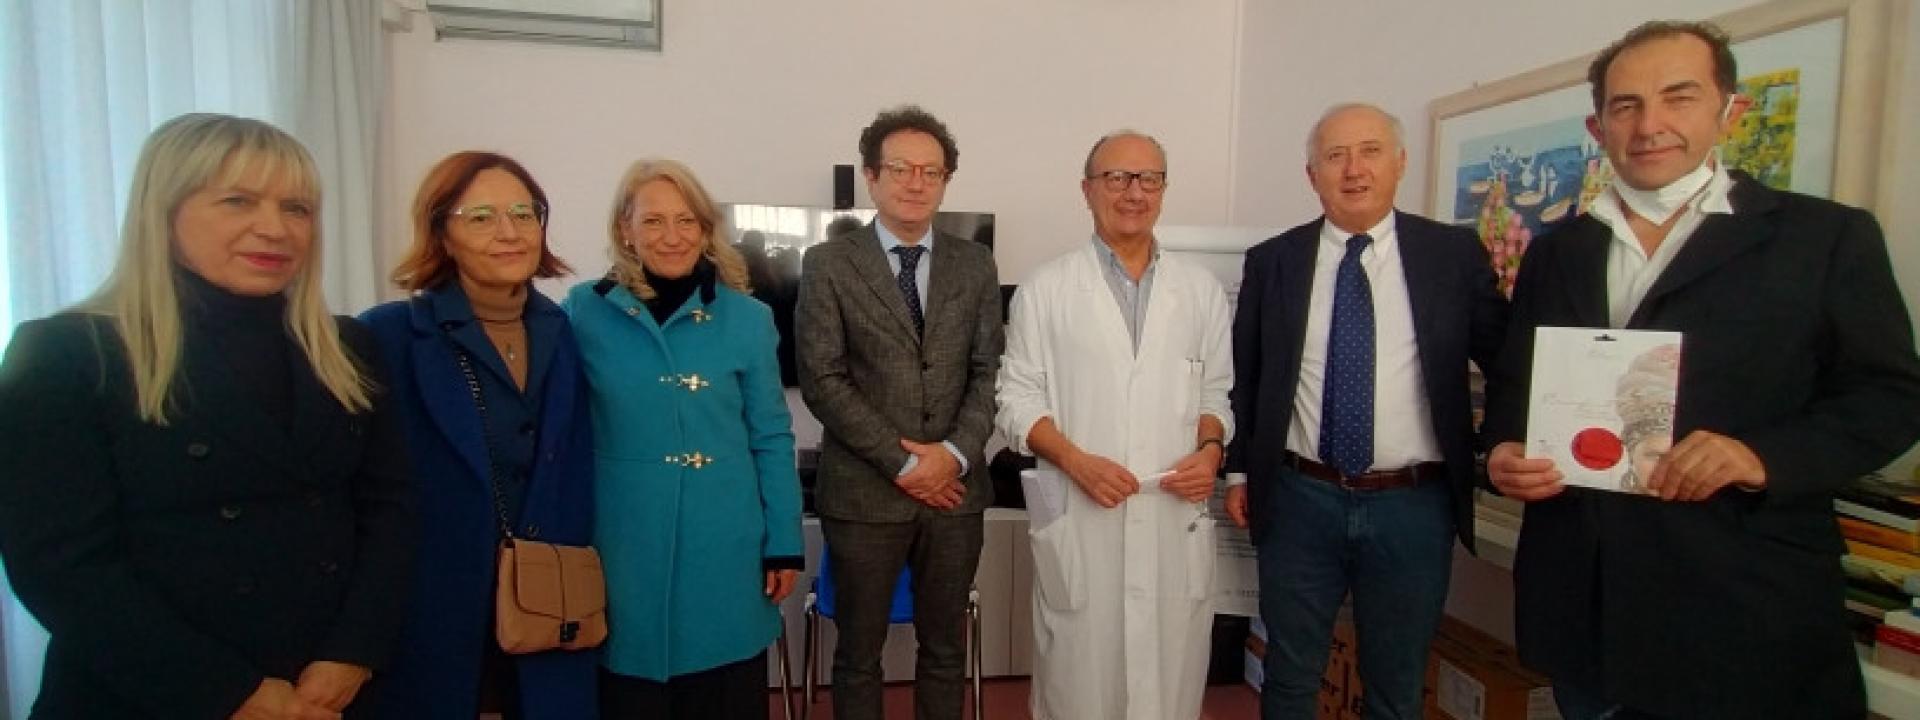 Marche - San Severino, un doppio dono per l'Hospice: una borsa di studio e cento cappelli per le pazienti oncologiche